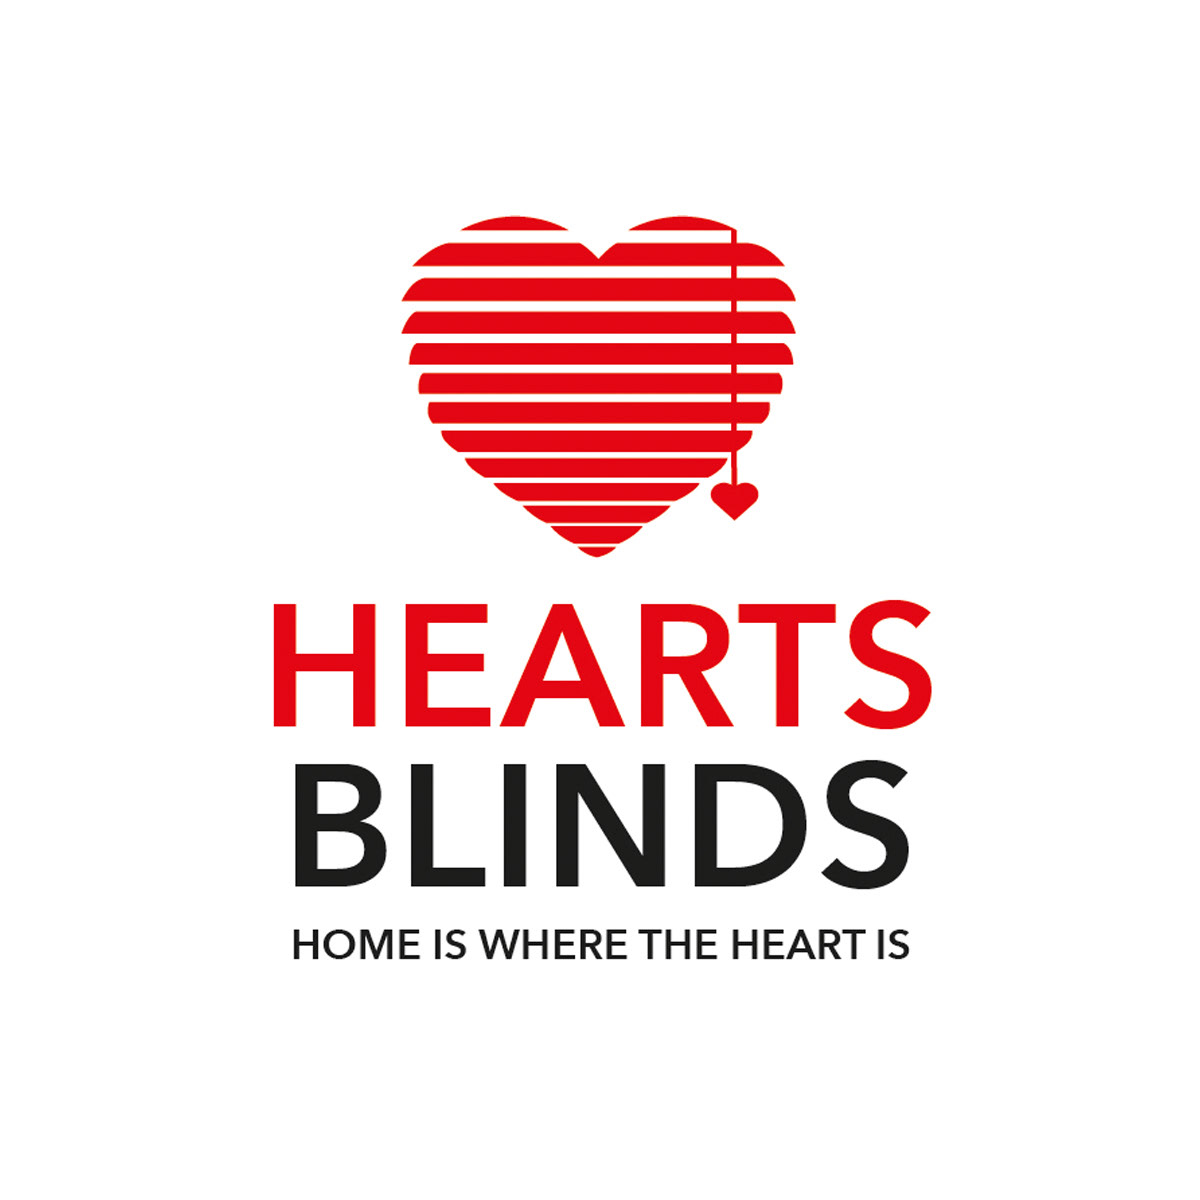 BlindBranding blinds branding  Heartsblinds